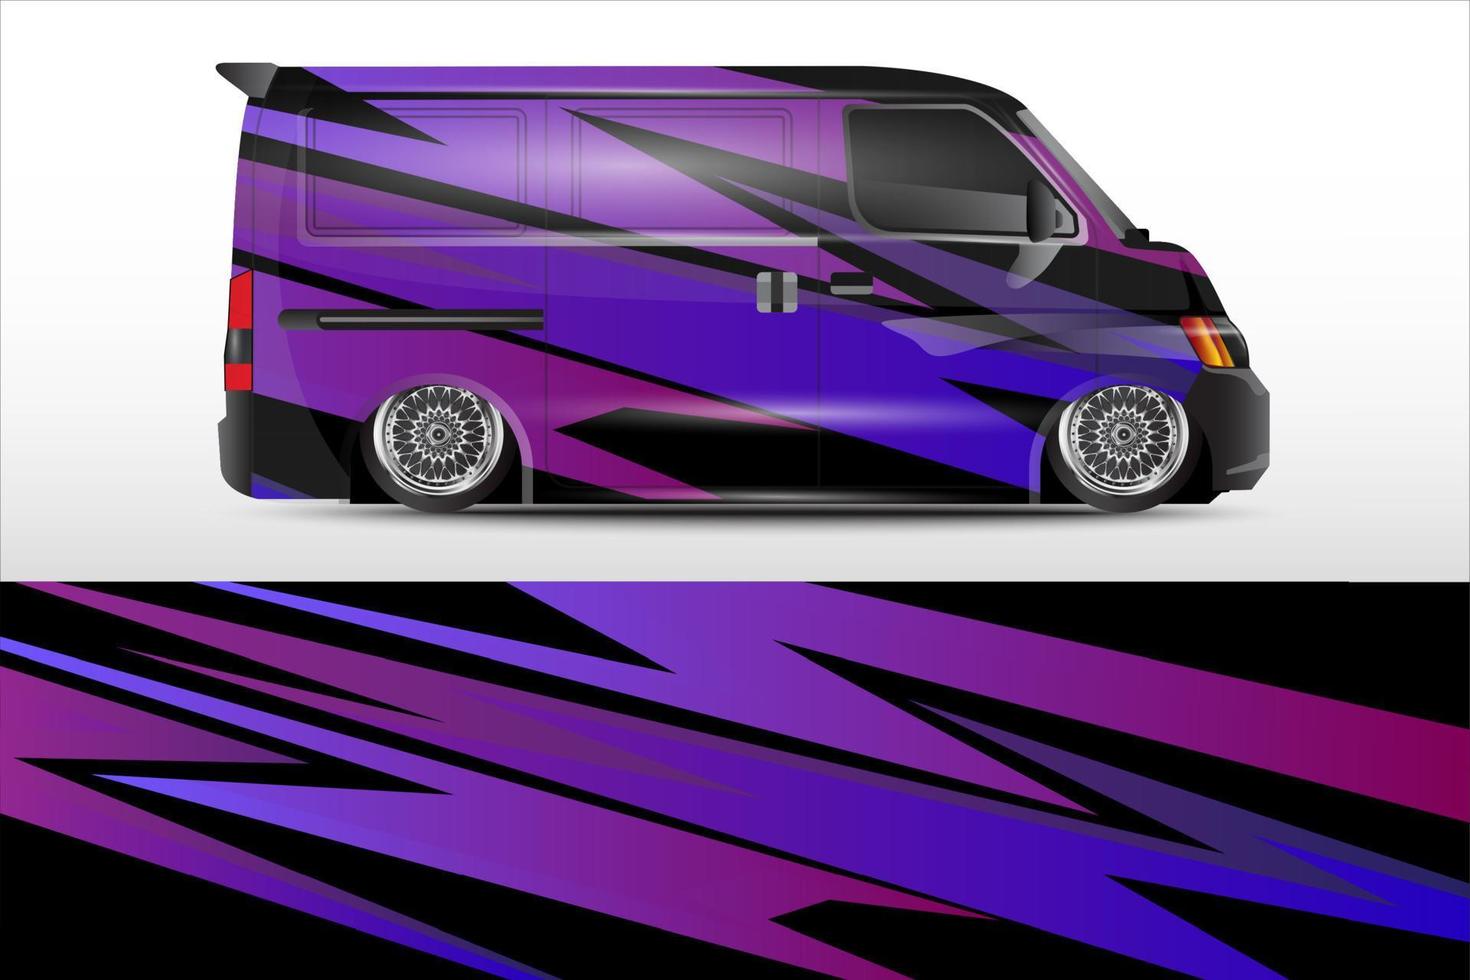 Rennwagen-Wrap-Vektor-Design für Fahrzeug-Vinyl-Aufkleber und Aufkleber-Lackierung von Automobilunternehmen vektor